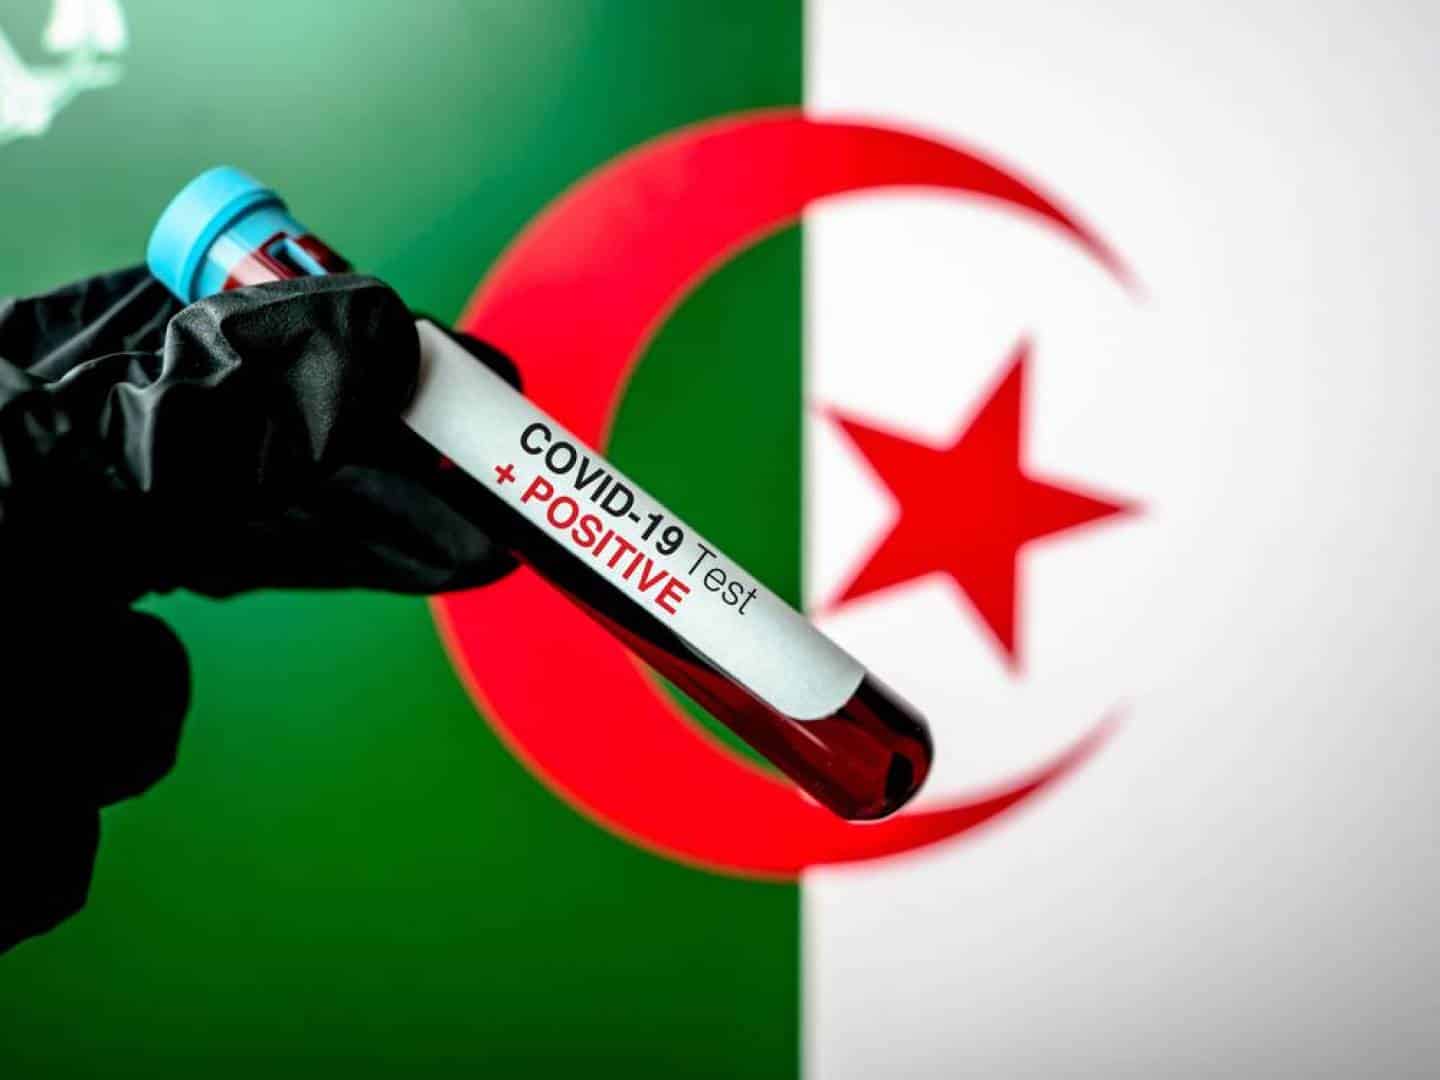 15 حالة وفاة في الجزائر بسبب كورونا